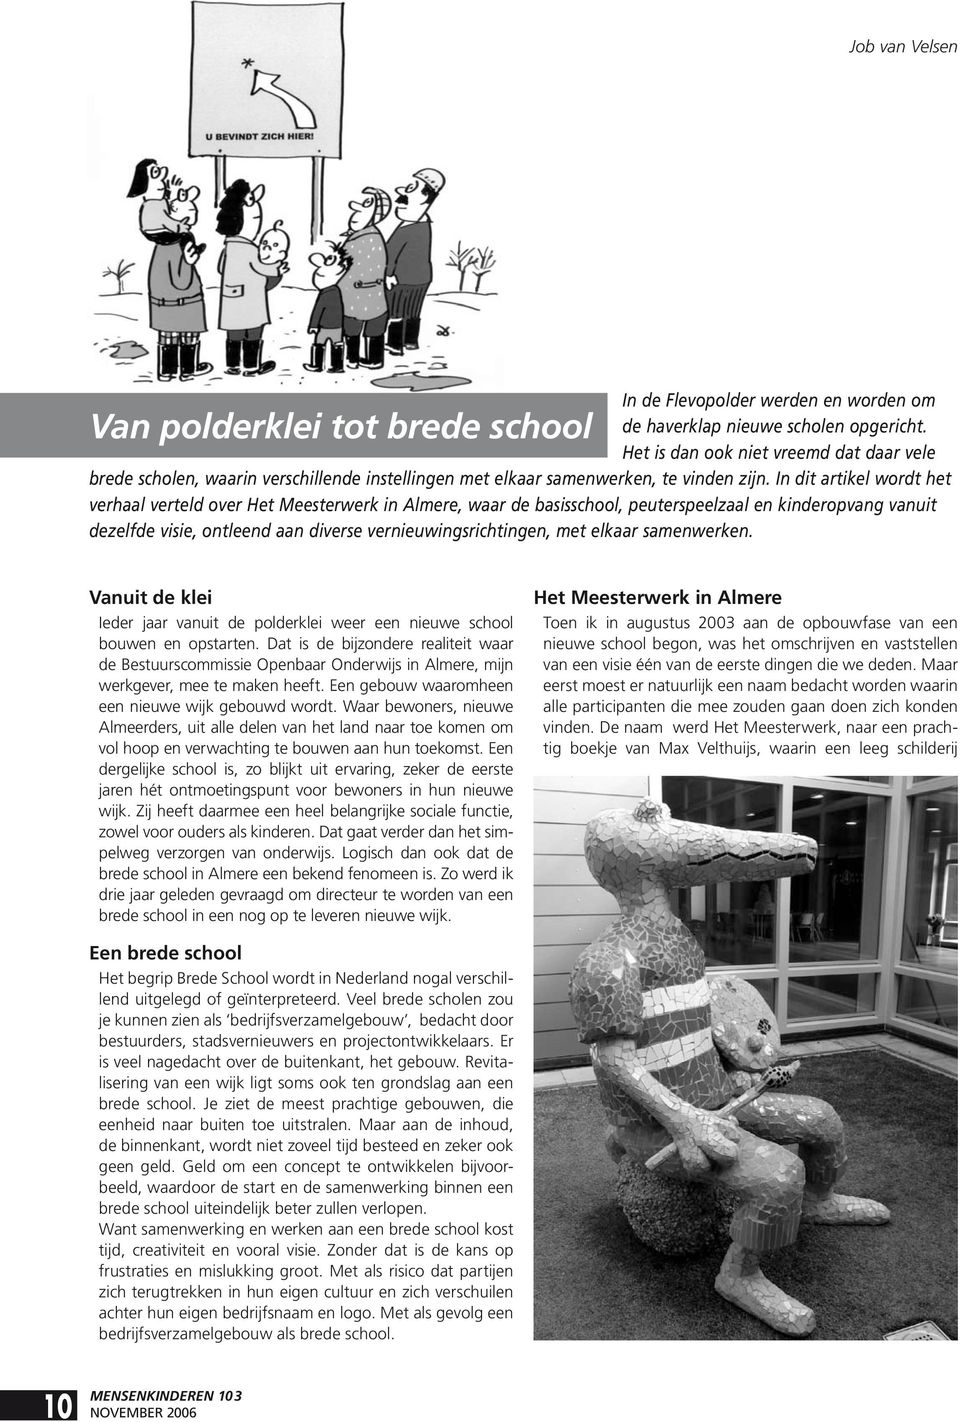 In dit artikel wordt het verhaal verteld over Het Meesterwerk in Almere, waar de basisschool, peuterspeelzaal en kinderopvang vanuit dezelfde visie, ontleend aan diverse vernieuwingsrichtingen, met